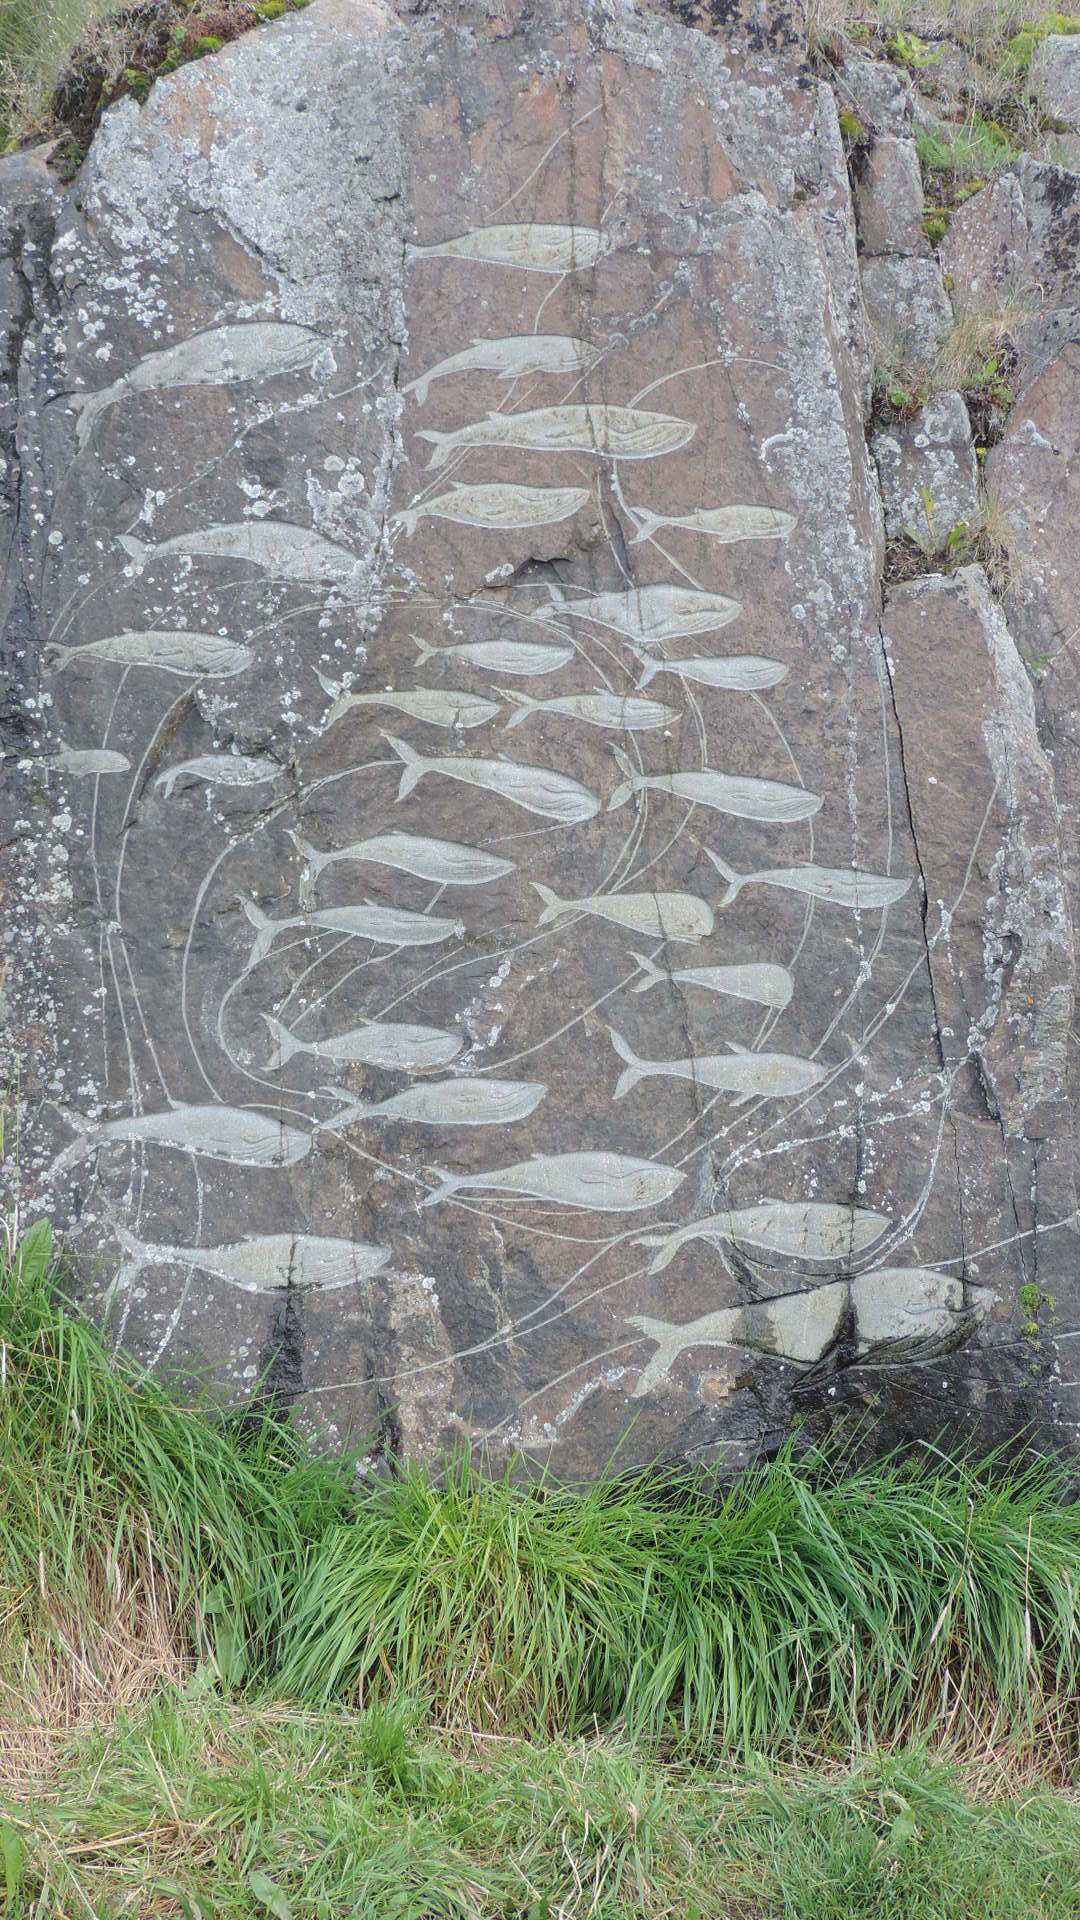 sculptures in rock